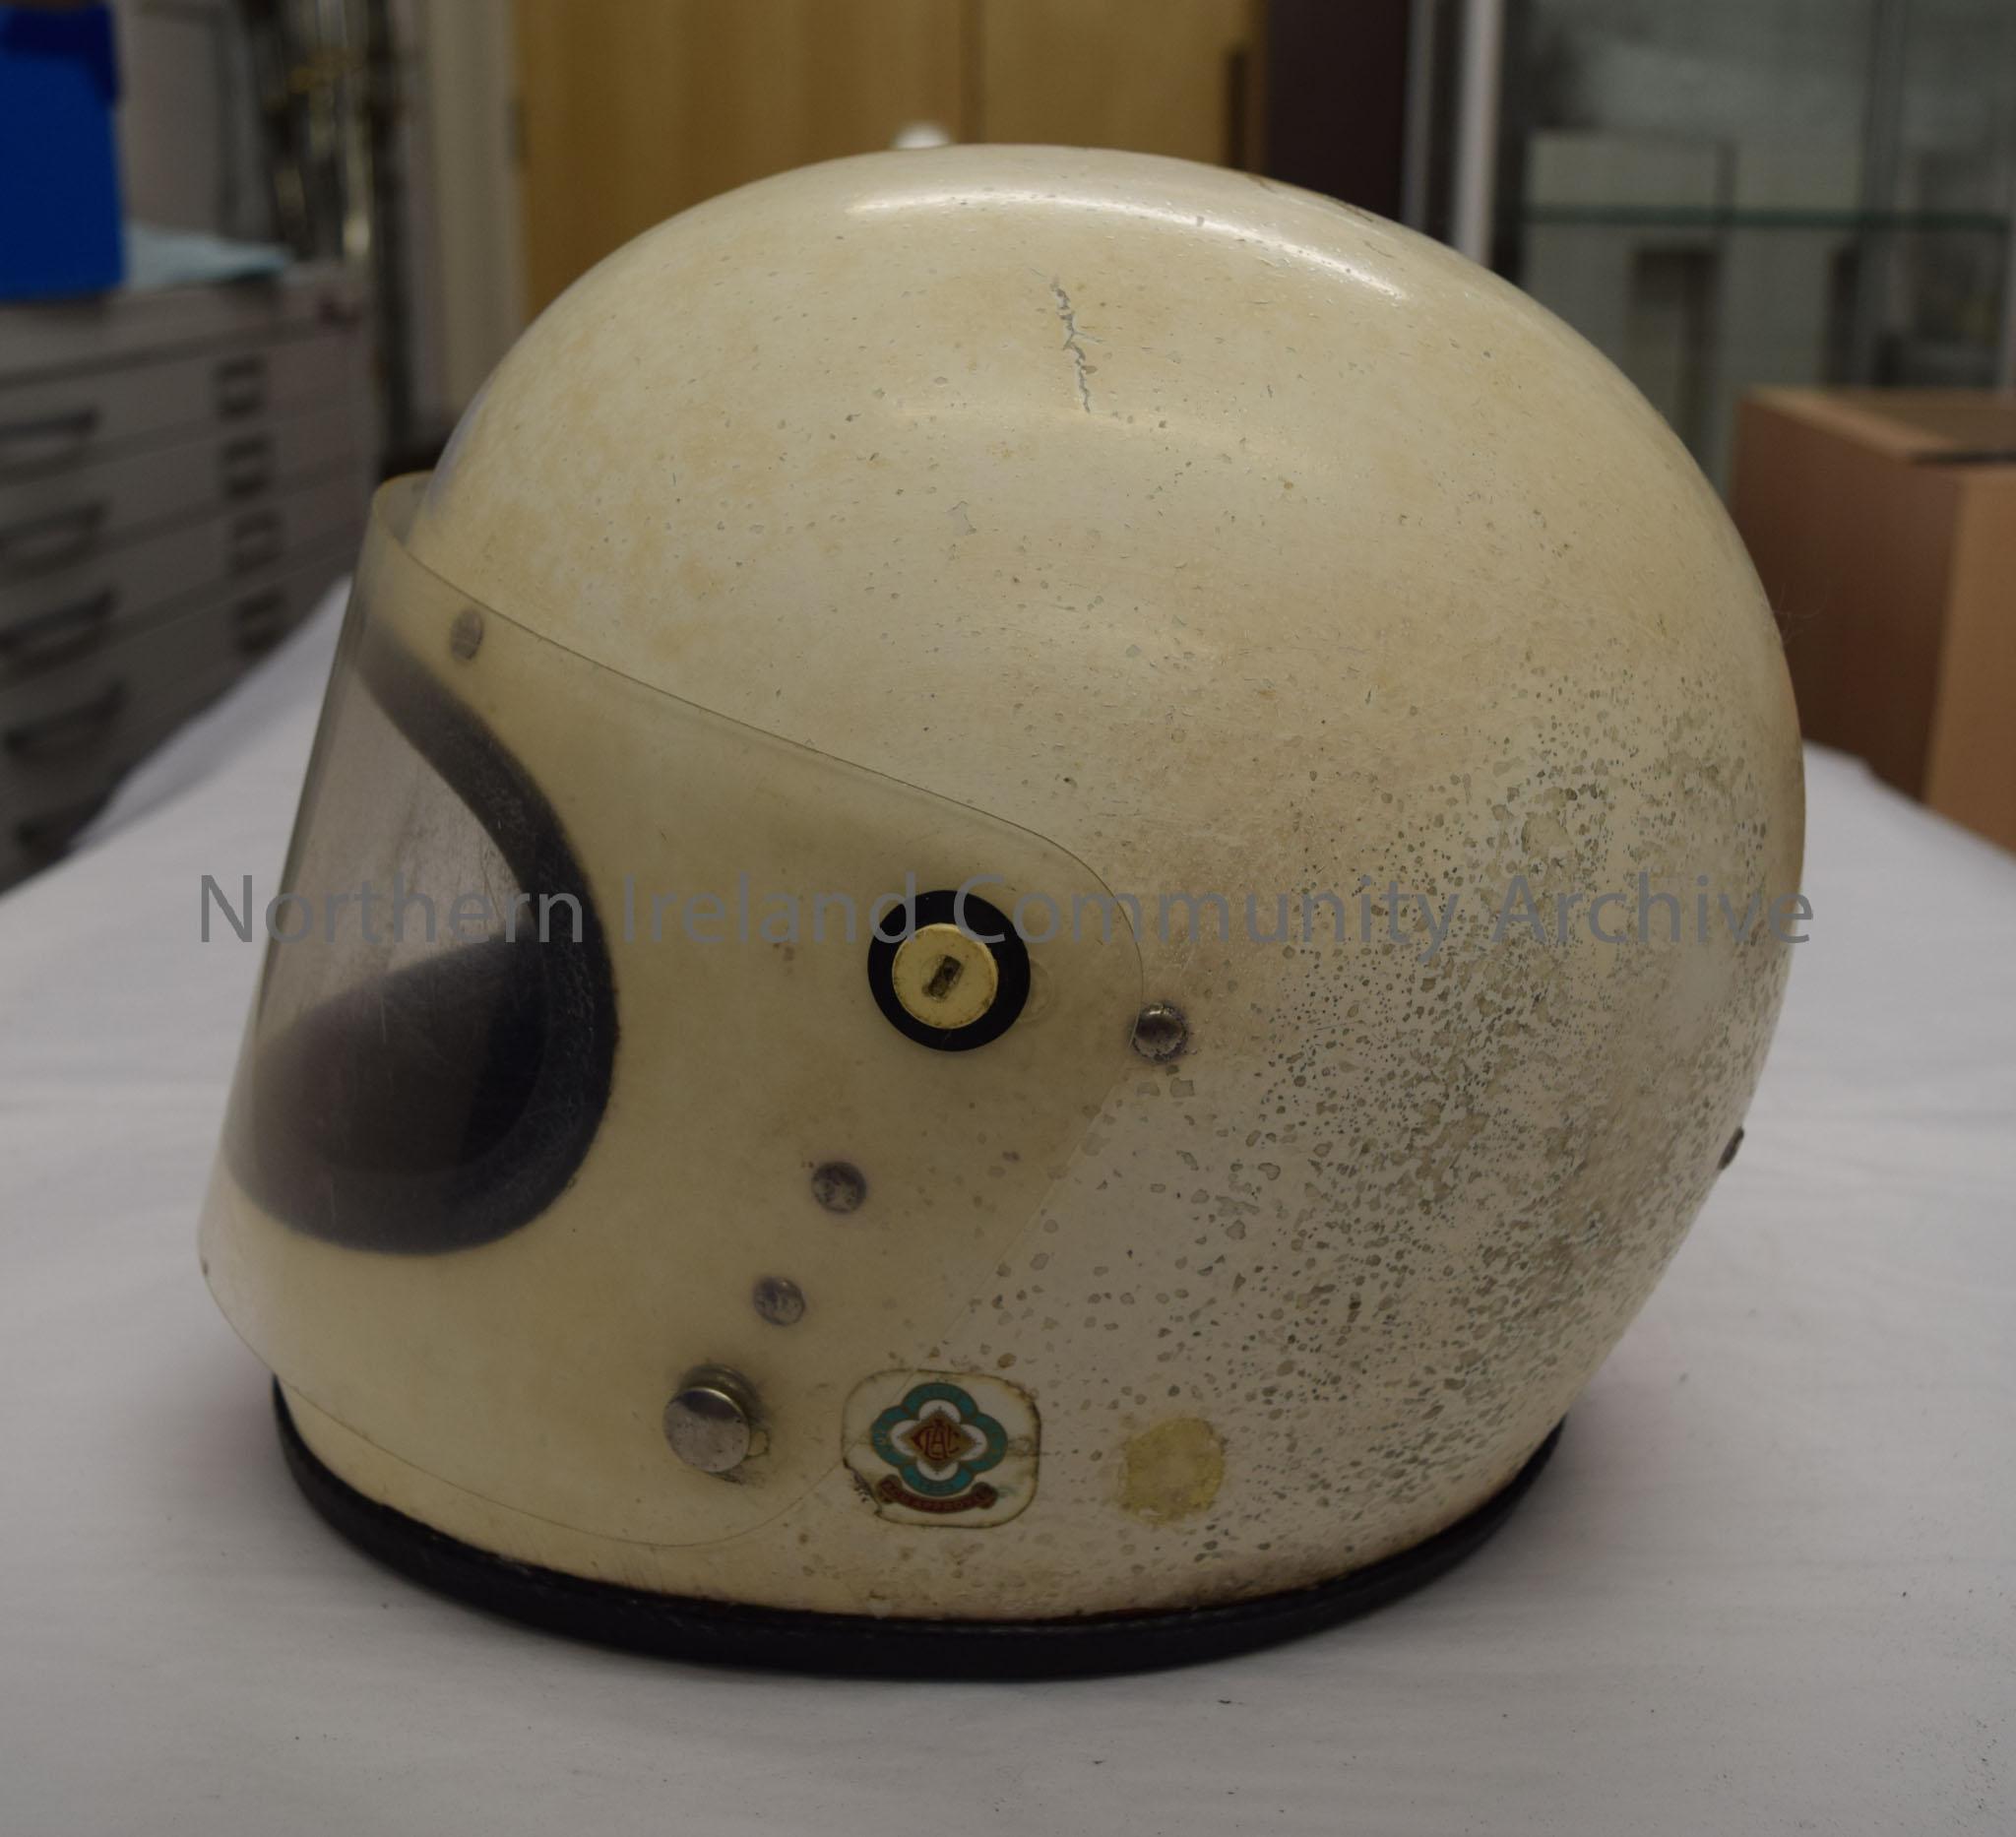 King motorcycle helmet. Plain white – 2016.23 (3)